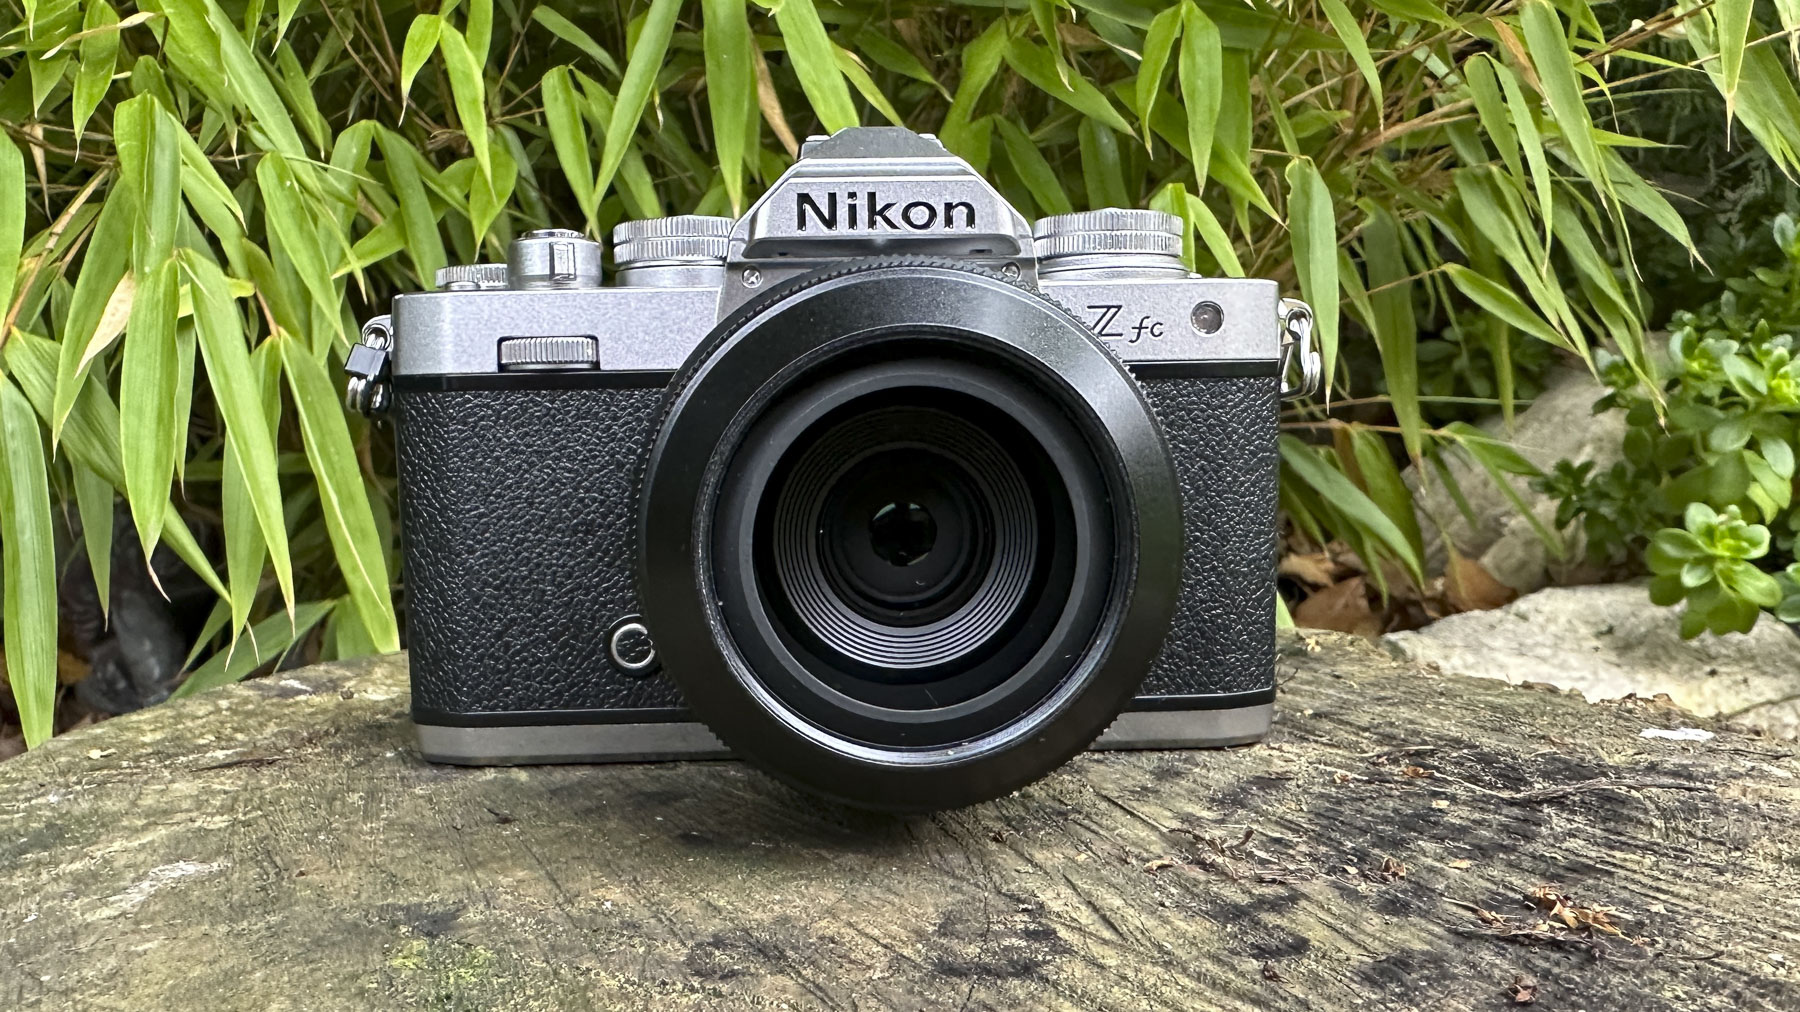 Vue frontale de l'objectif Nikkor Z DX 24mm f/1.7 avec l'objectif monté sur un appareil photo Nikon Z fc